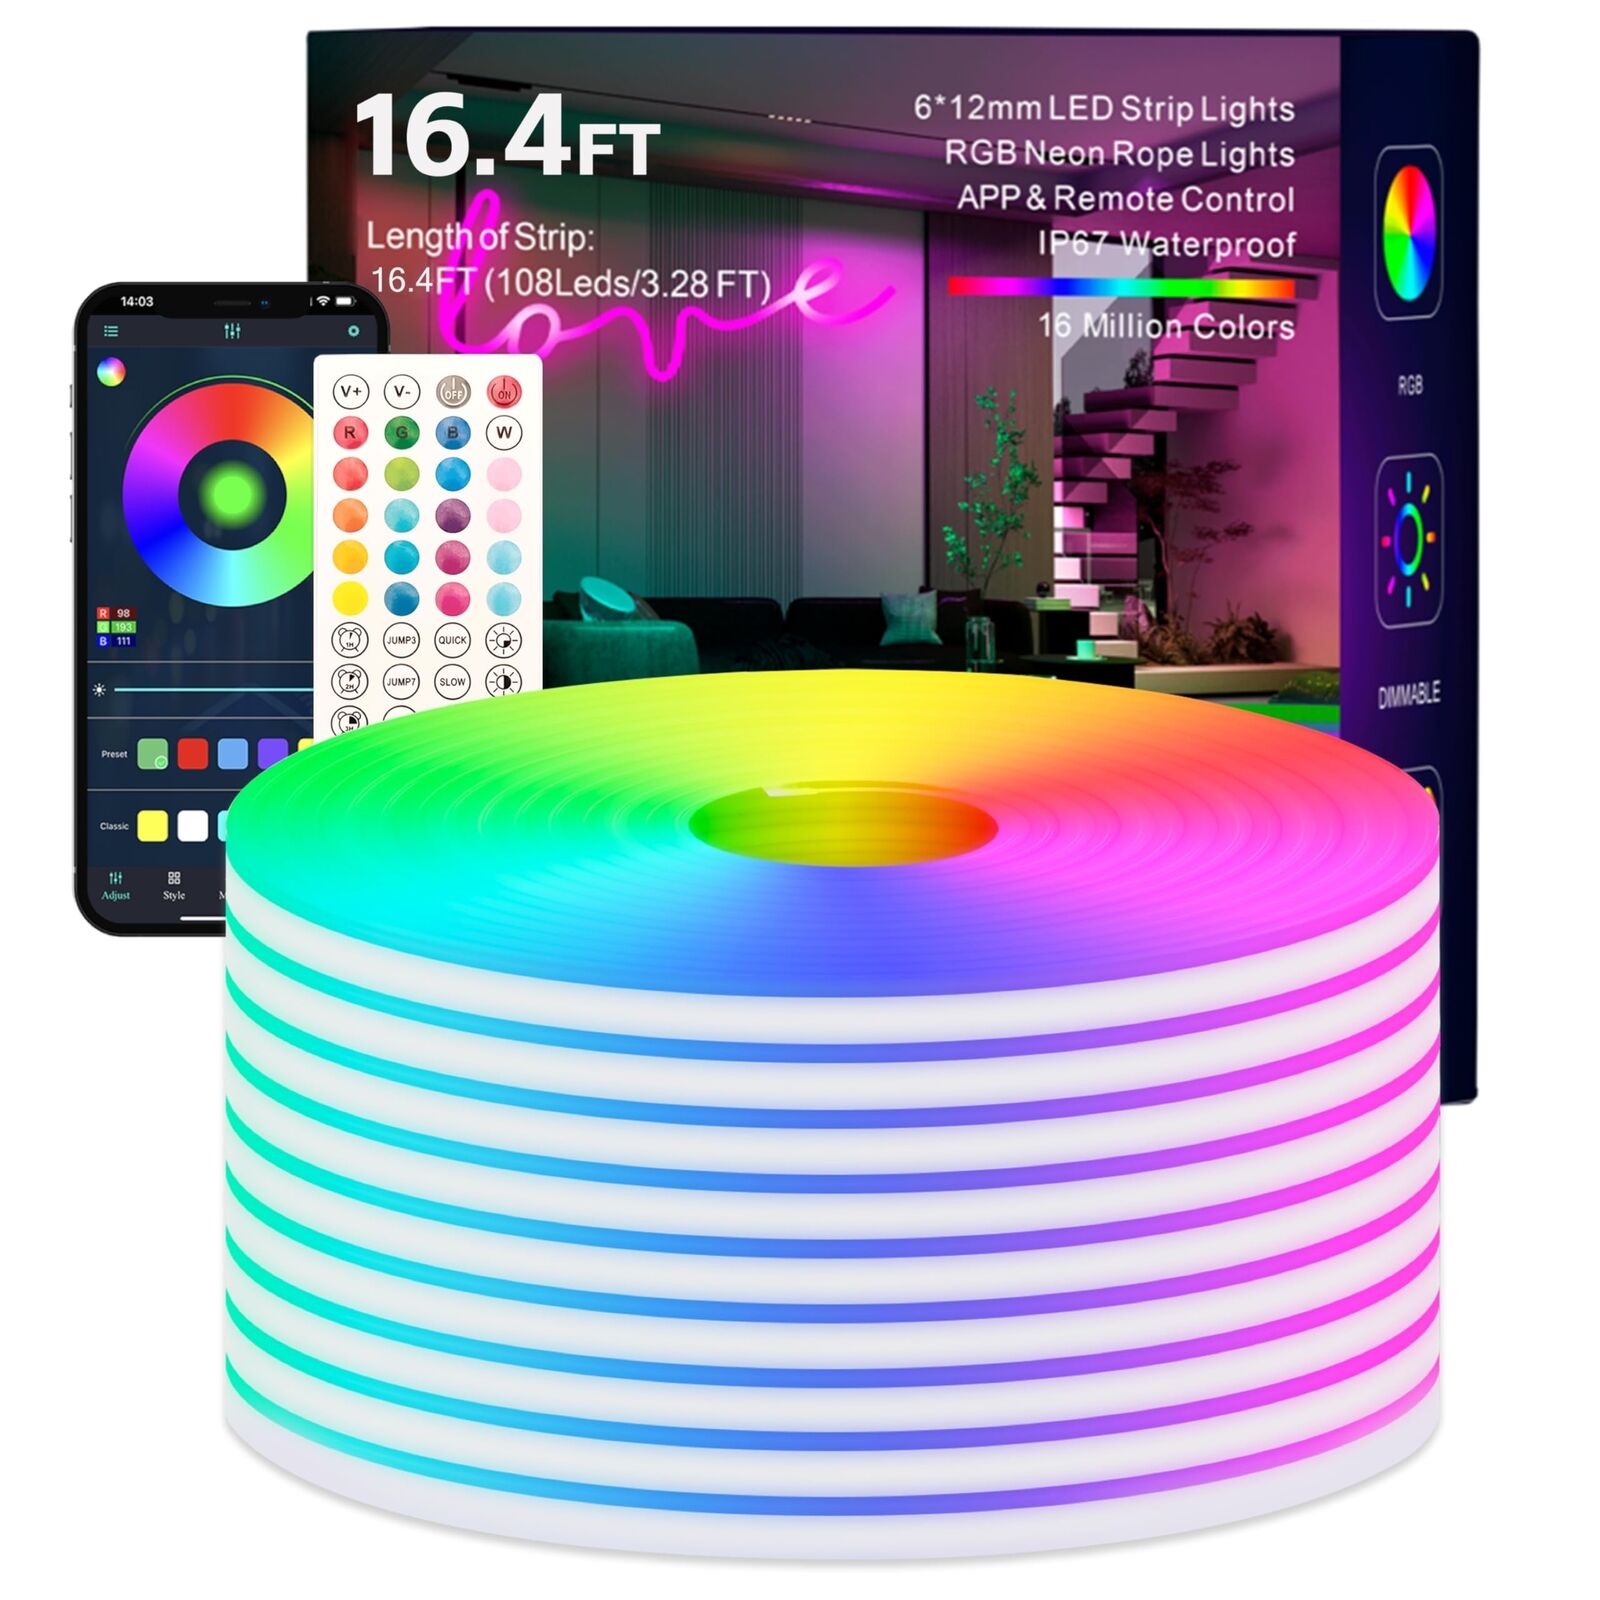 Neon LED Strip Lights,16.4FT/5M RGB Indoor Outdoor IP67 Waterproof Smart Control